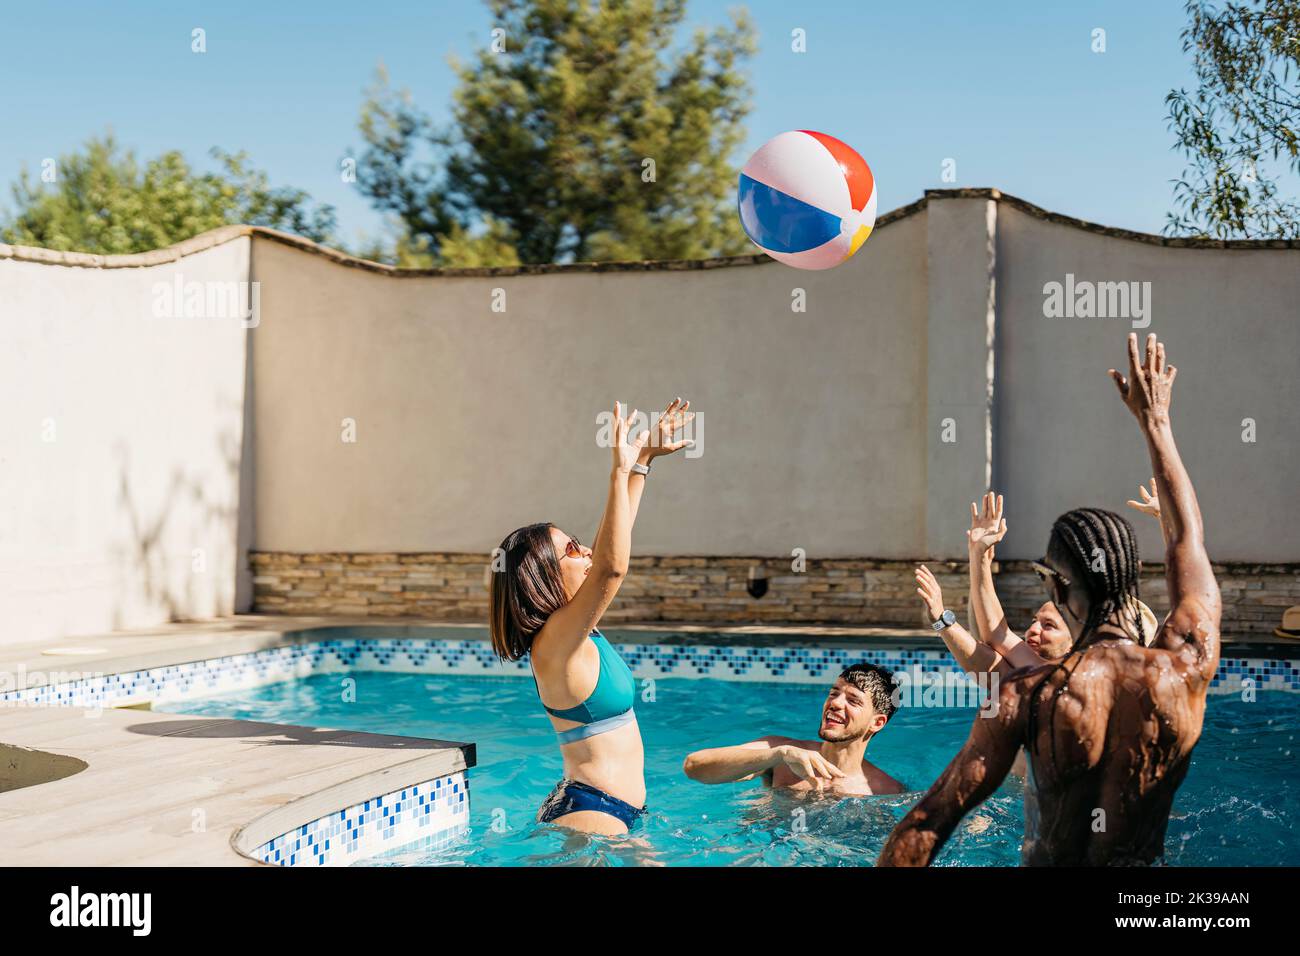 grupo multiétnico jugando en una piscina con una pelota Foto de stock